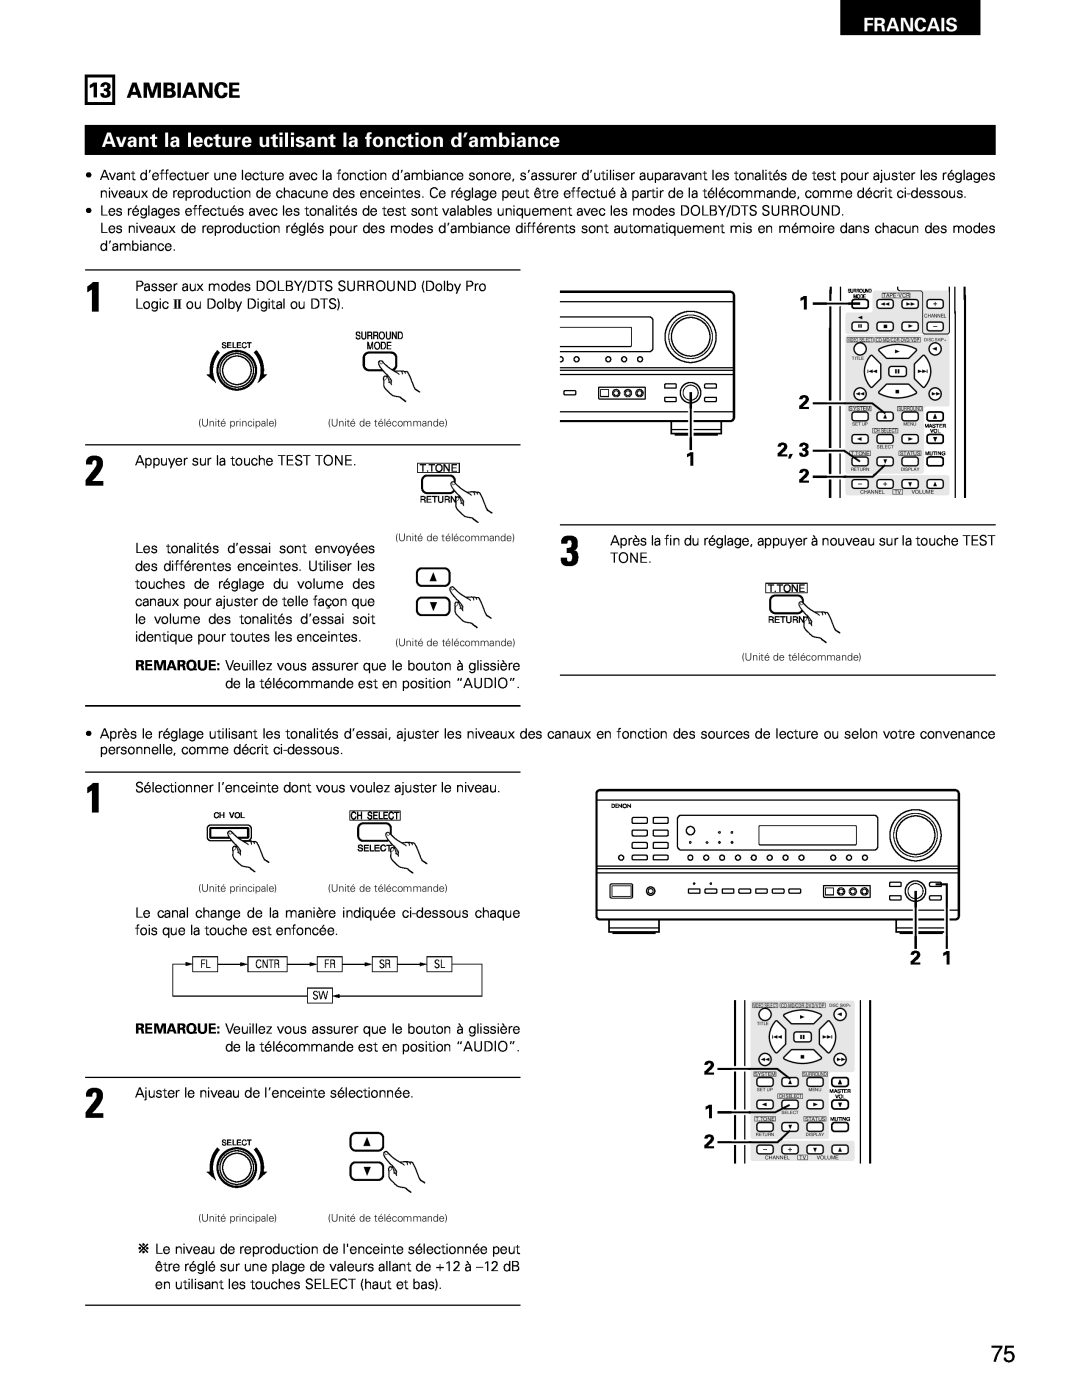 Denon AVR-1802/882 manual Ambiance, Avant la lecture utilisant la fonction d’ambiance, Francais 